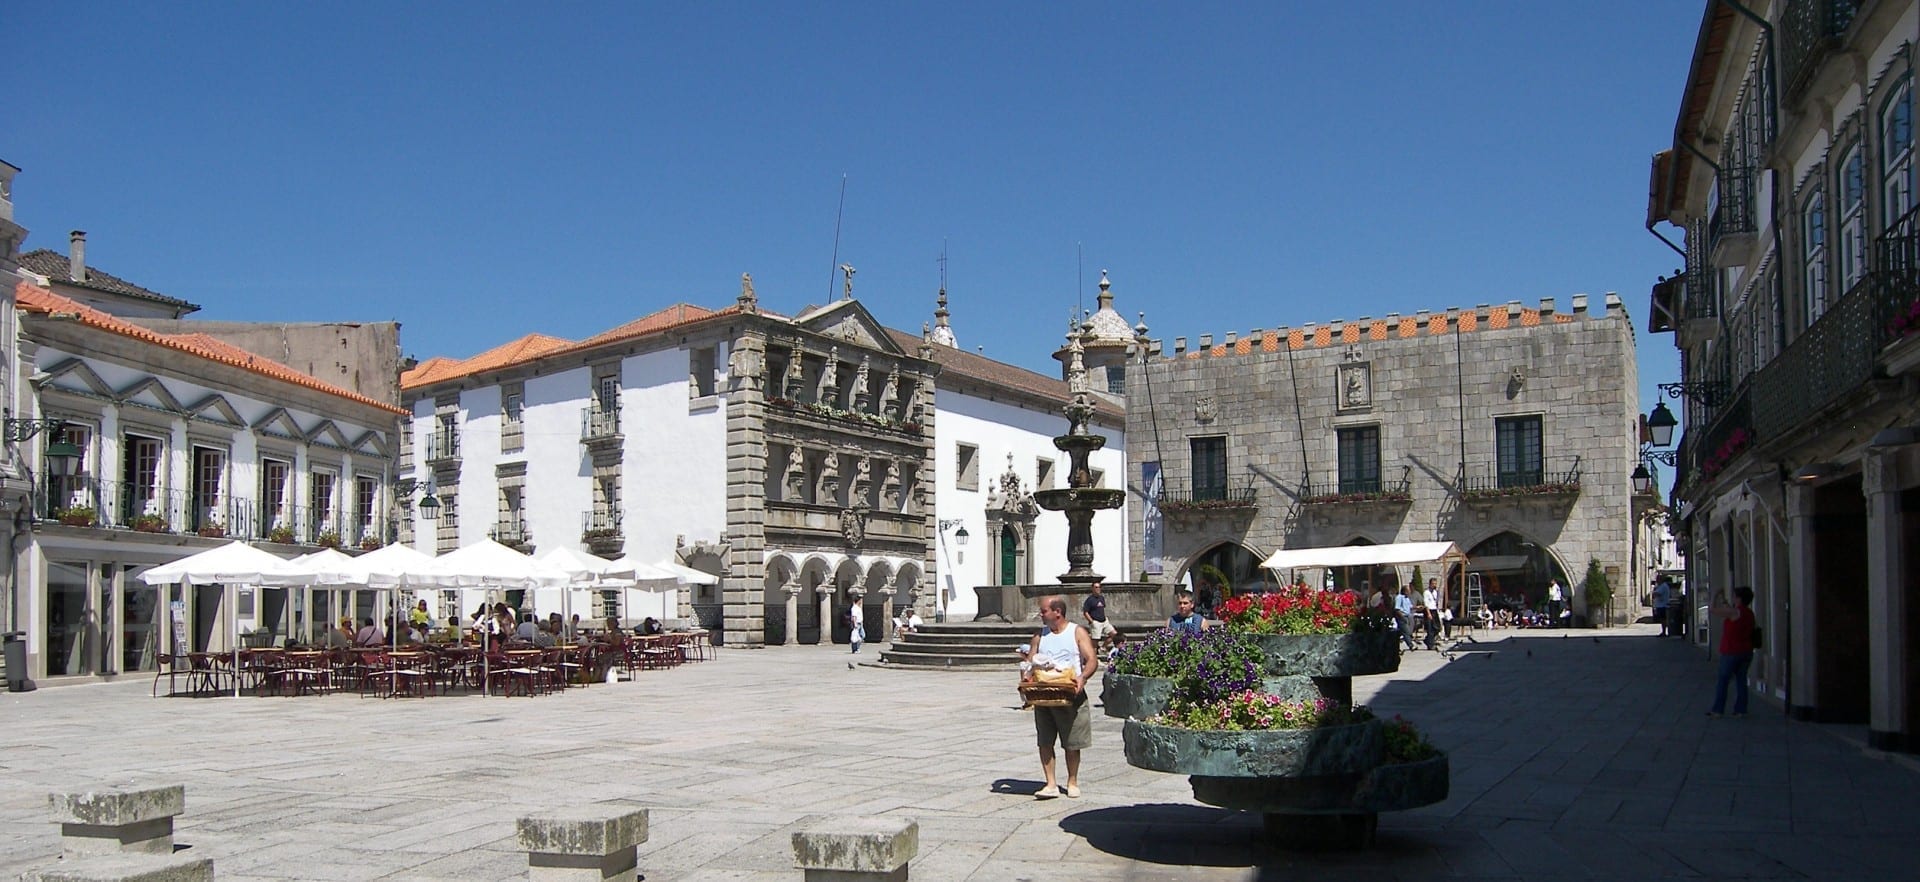 La Plaza de la República. Viana do Castelo Portugal